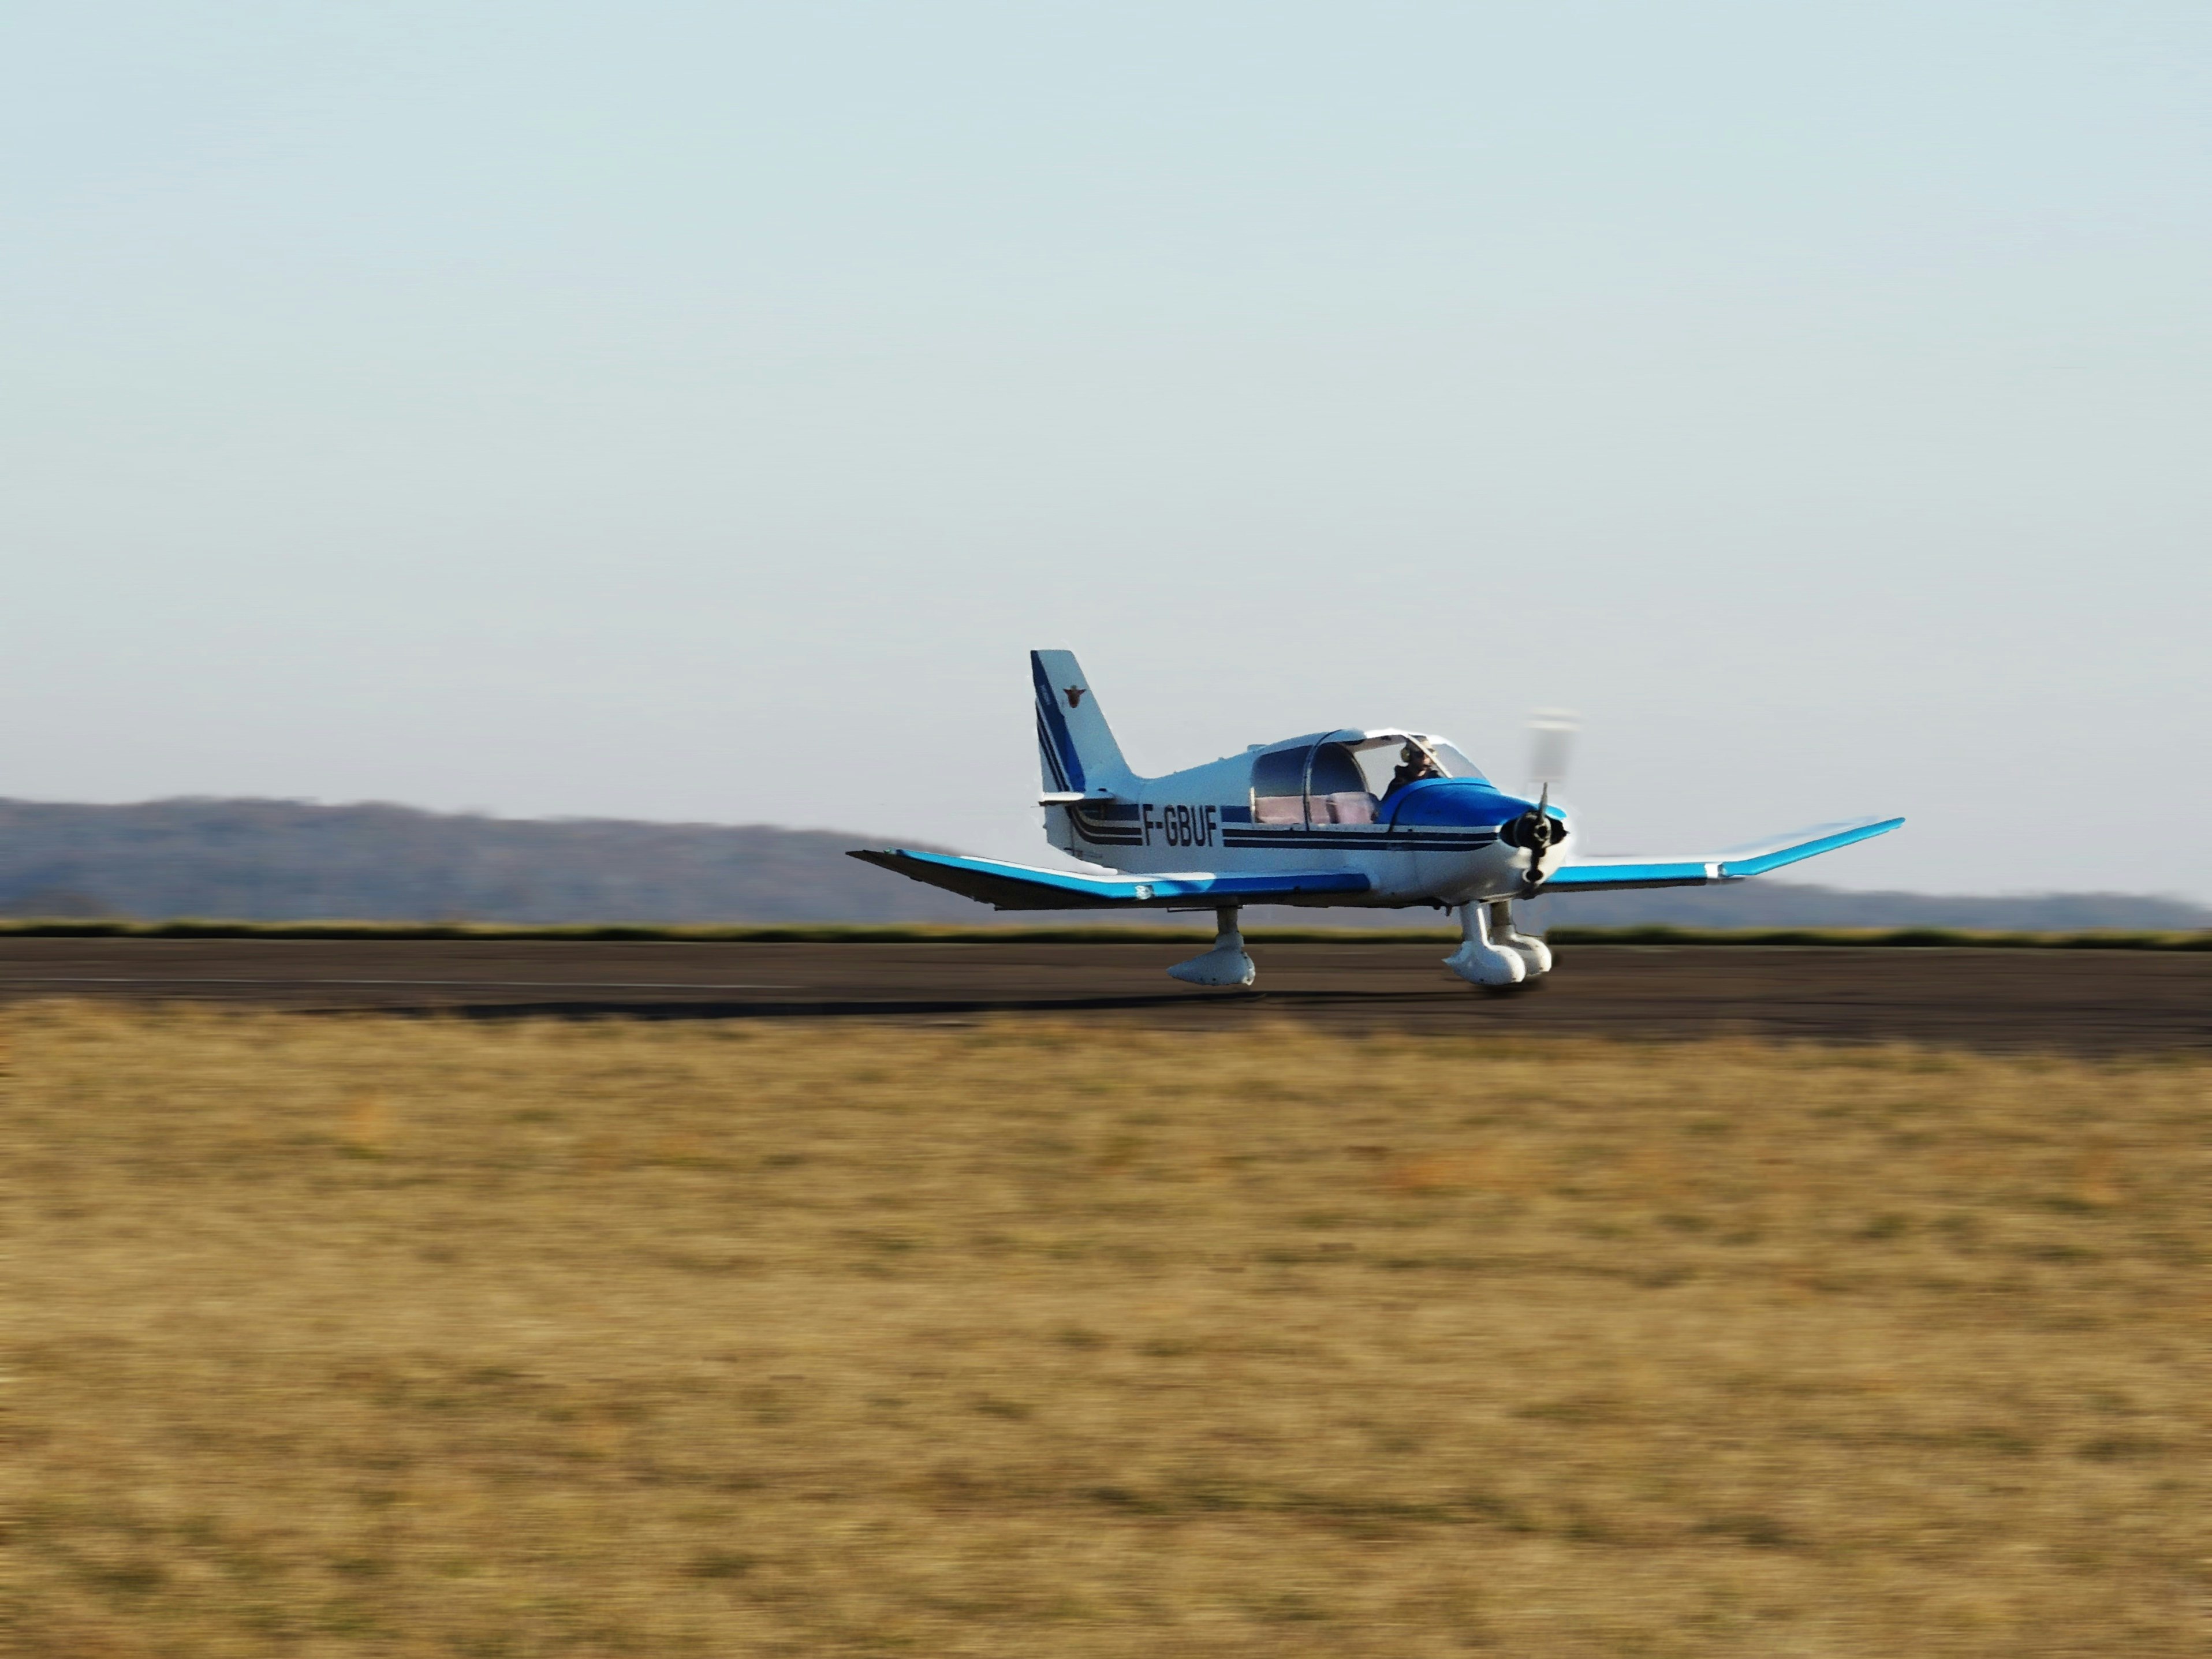 Plane taking off in Darois near Dijon🇫🇷